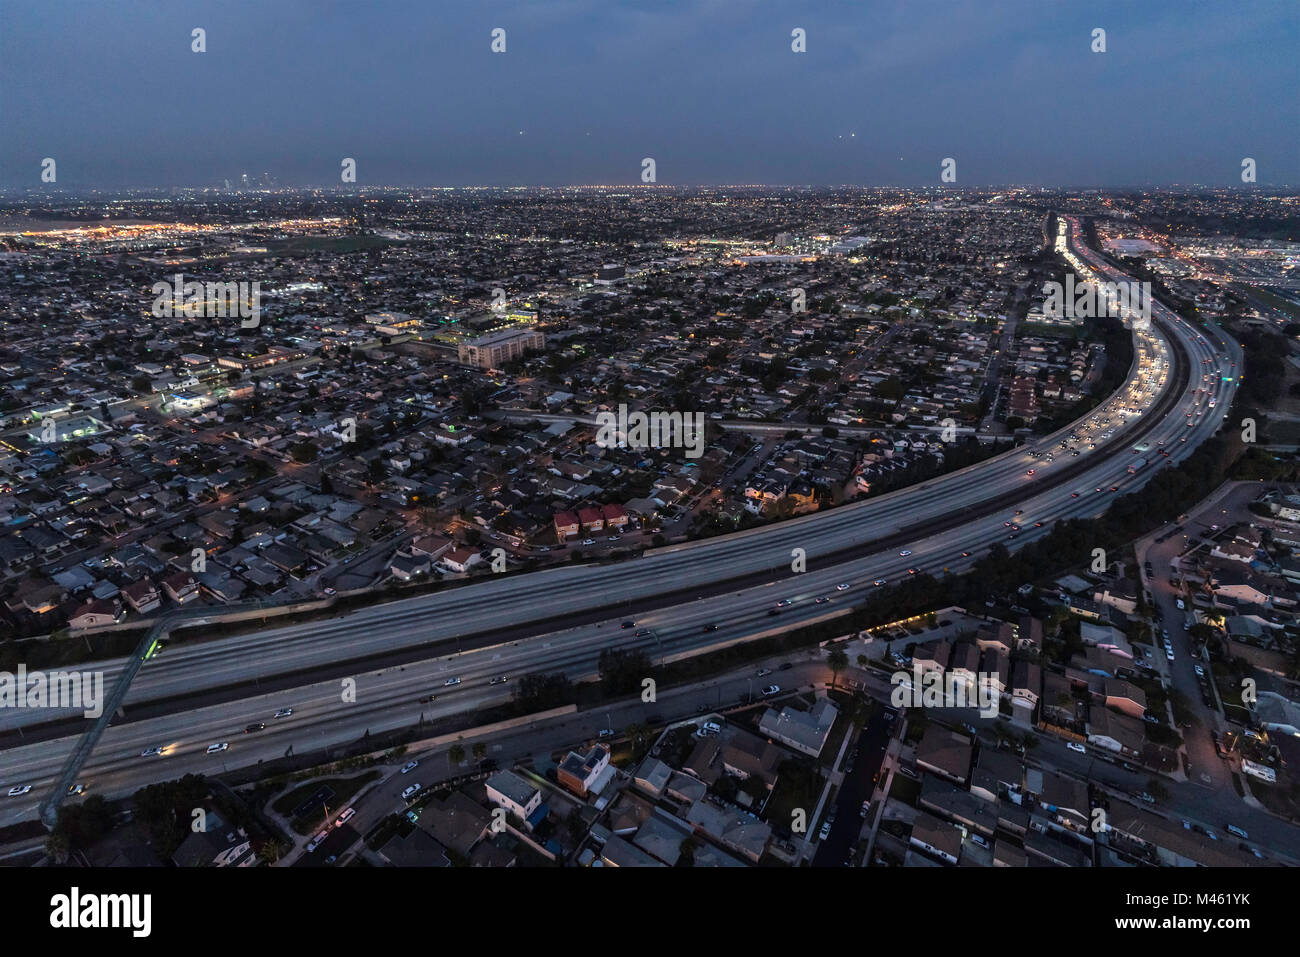 Notte Vista aerea del 105 freeway a Los Angeles in California. Il traffico di laminazione pausa sulla West bound lanes in corso è visibile. Foto Stock